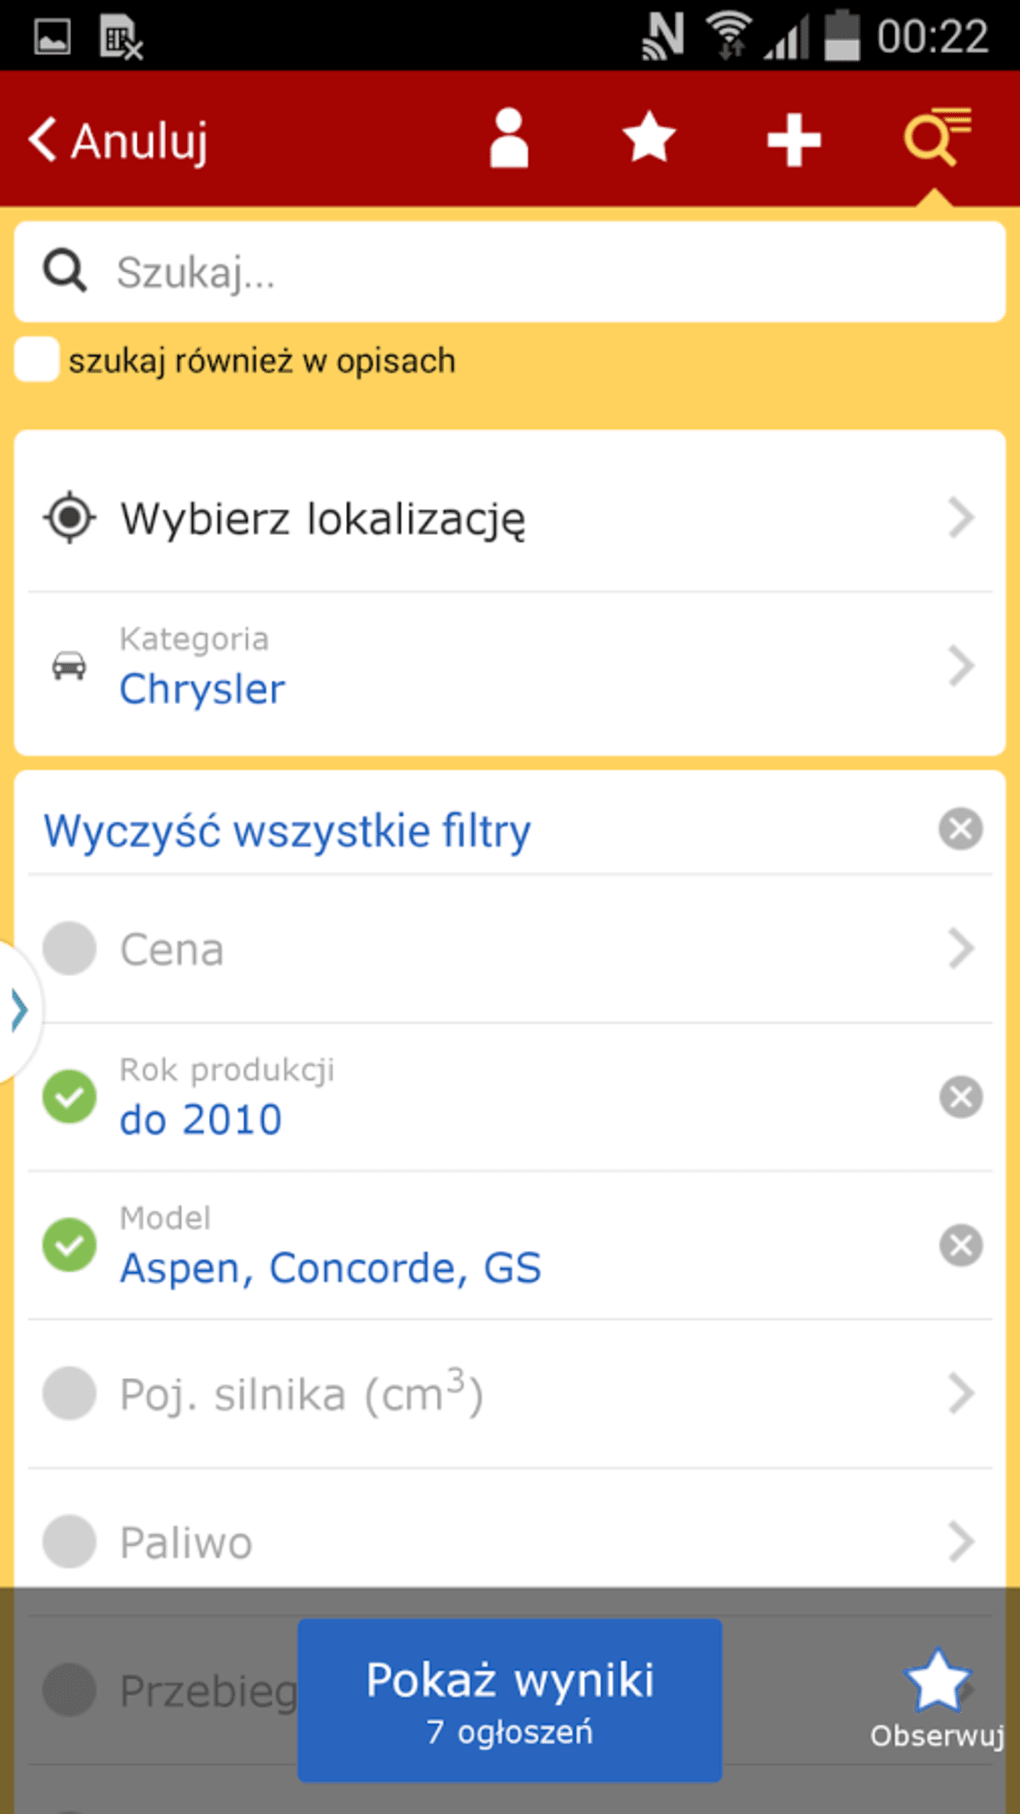 OLX - ogłoszenia lokalne - Apps on Google Play